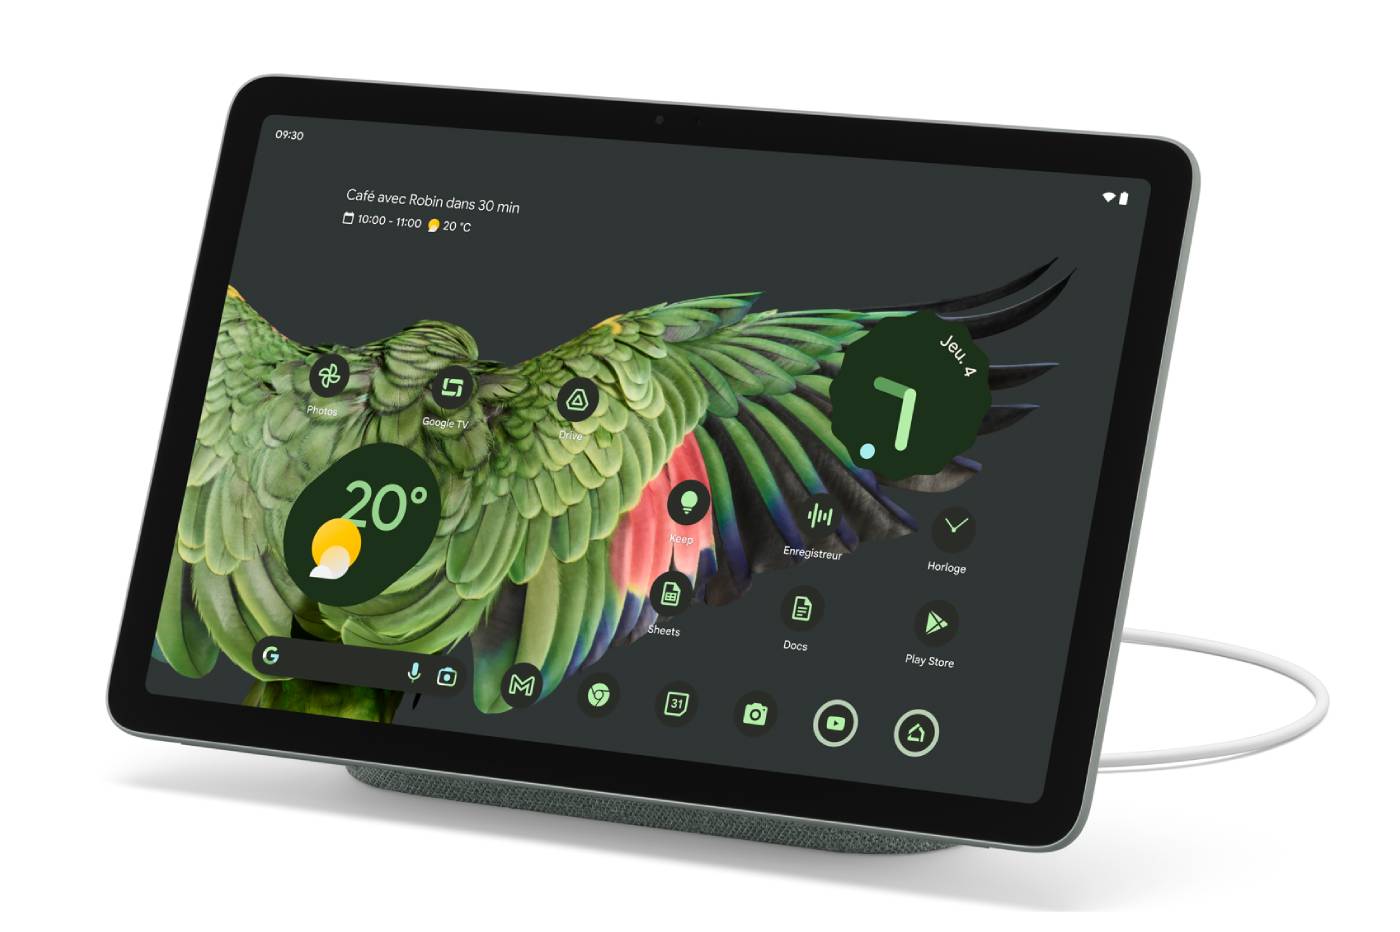 La ZTE Light 2, une tablette avec Android 2.2, 3G et GPS